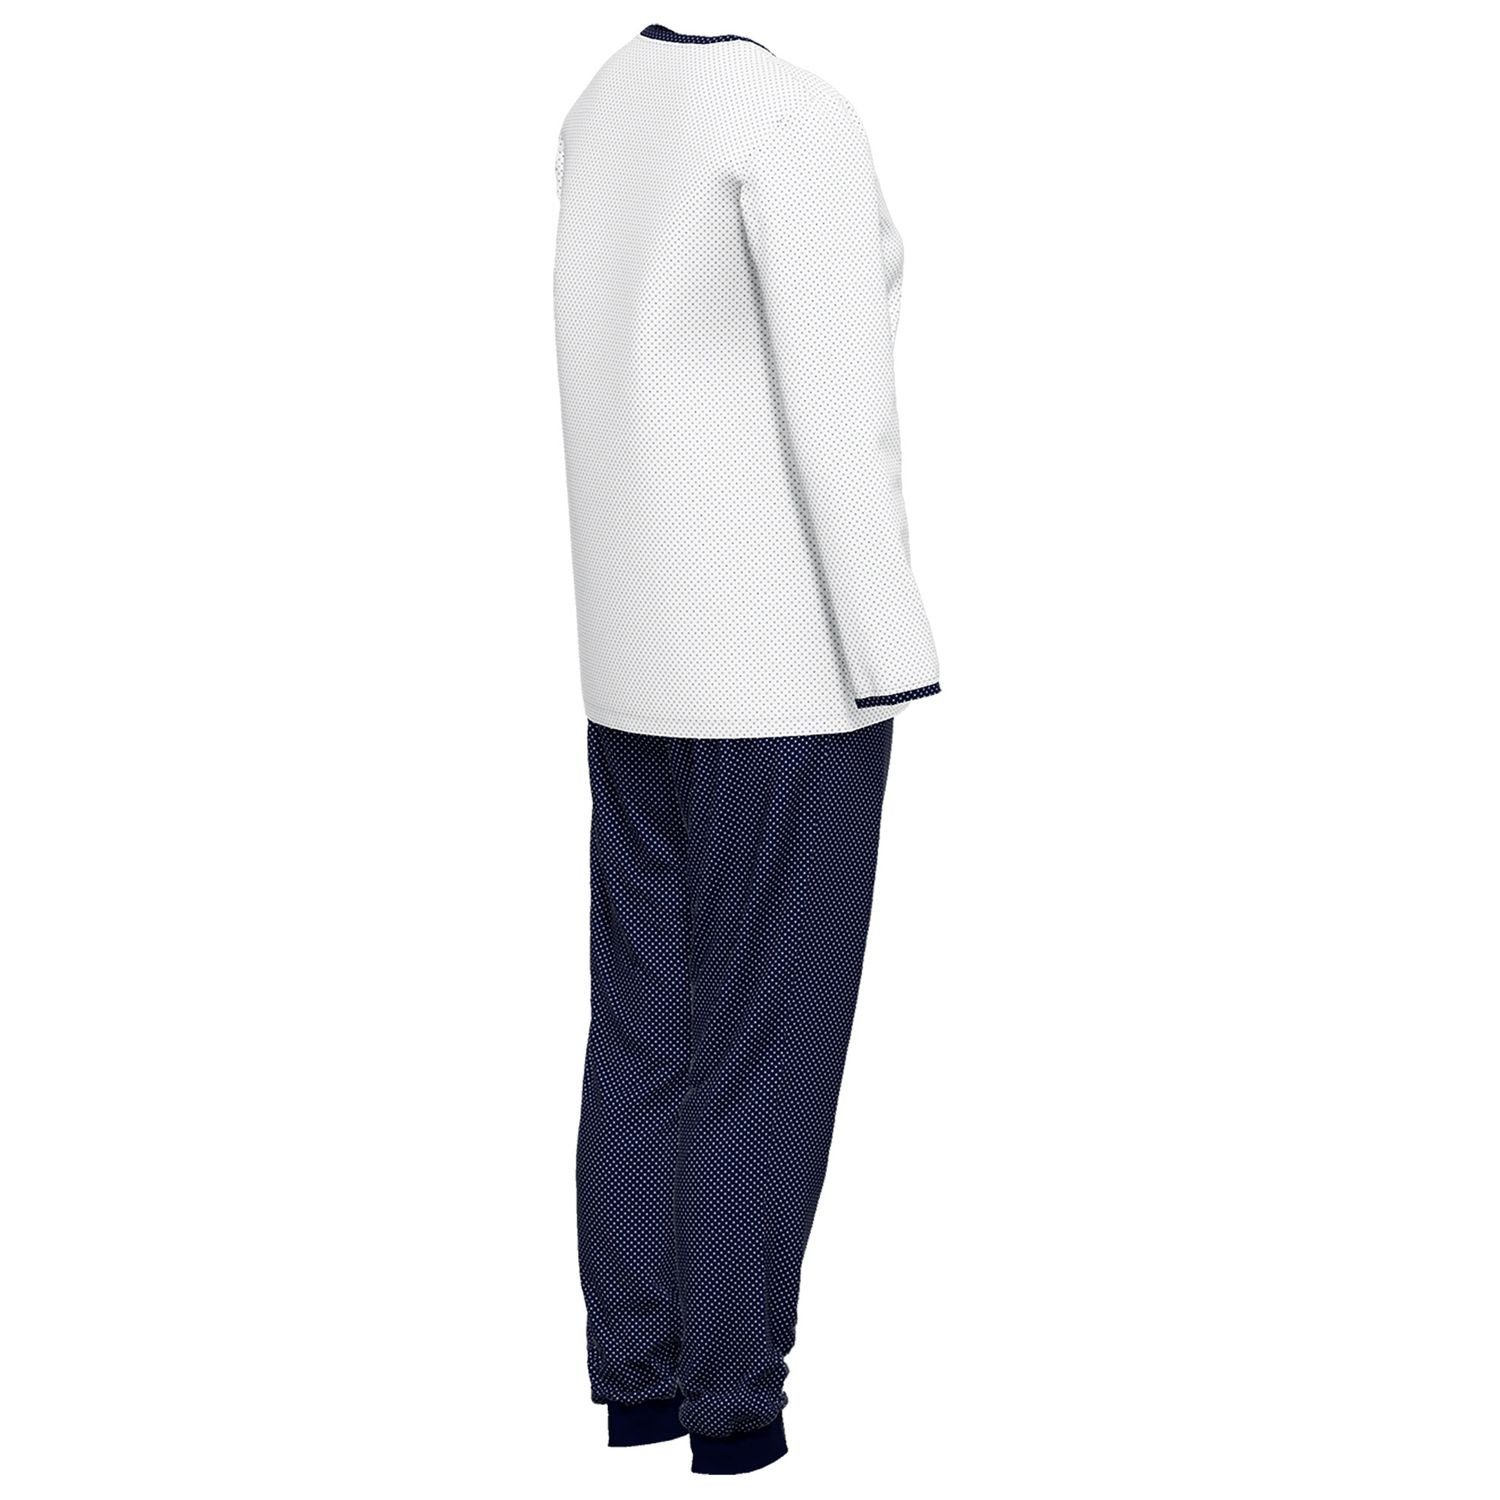 GÖTZBURG Schlafanzug reine mit Henley-Auschnitt, Knöpfe, Baumolle navy gepunktet weiß langarm, weich, bequem, 